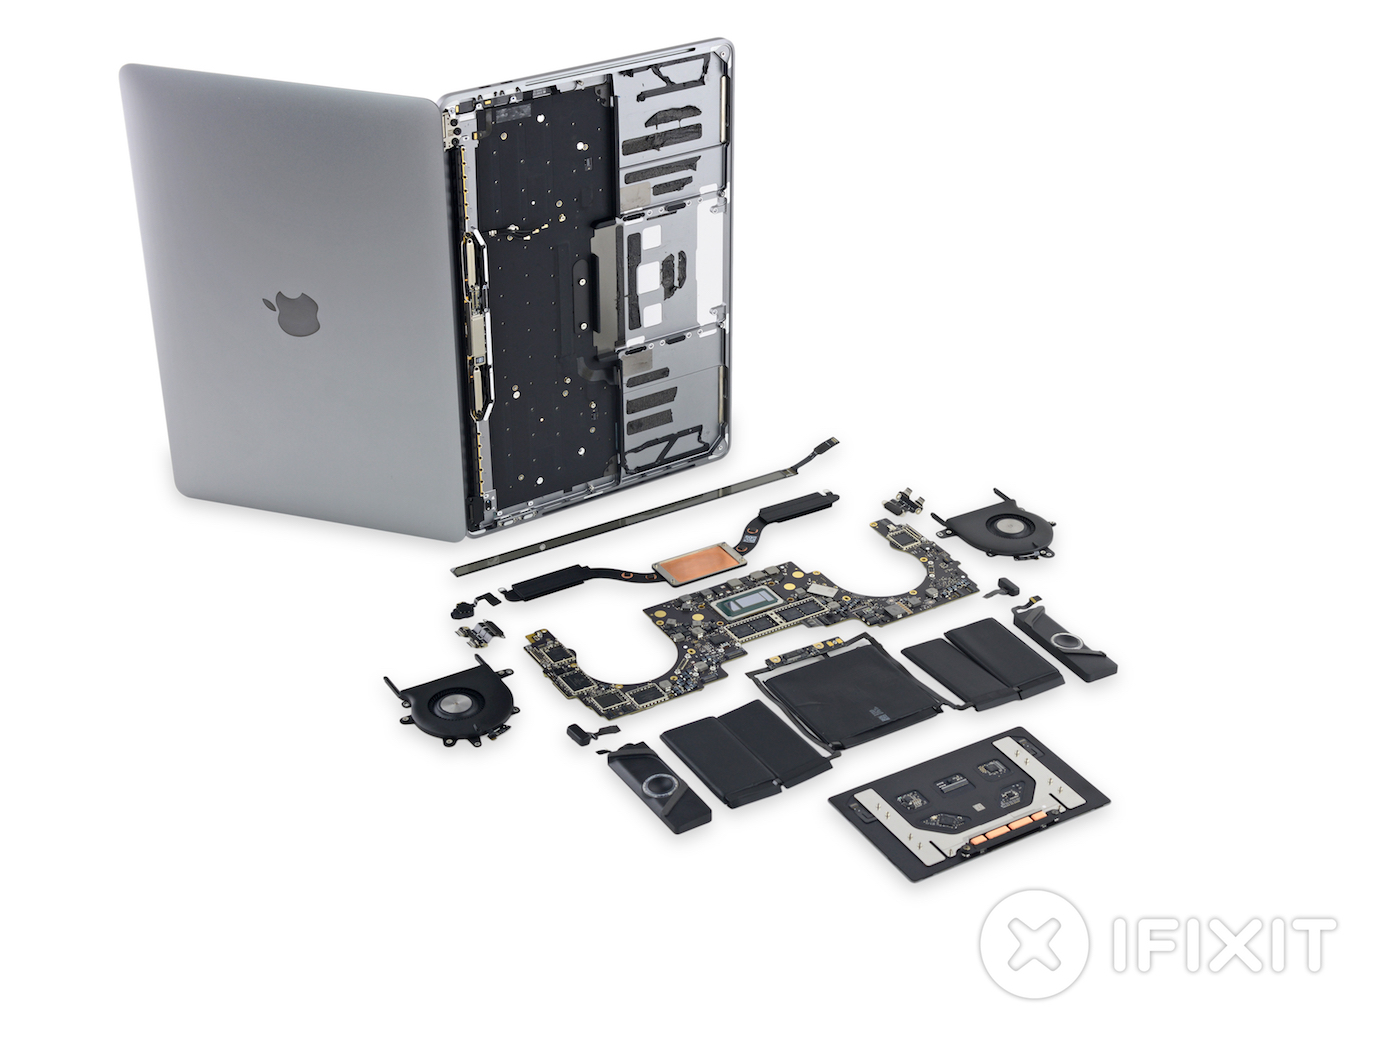 Le démontage du MacBook Pro M2 montre que (presque) rien n'a